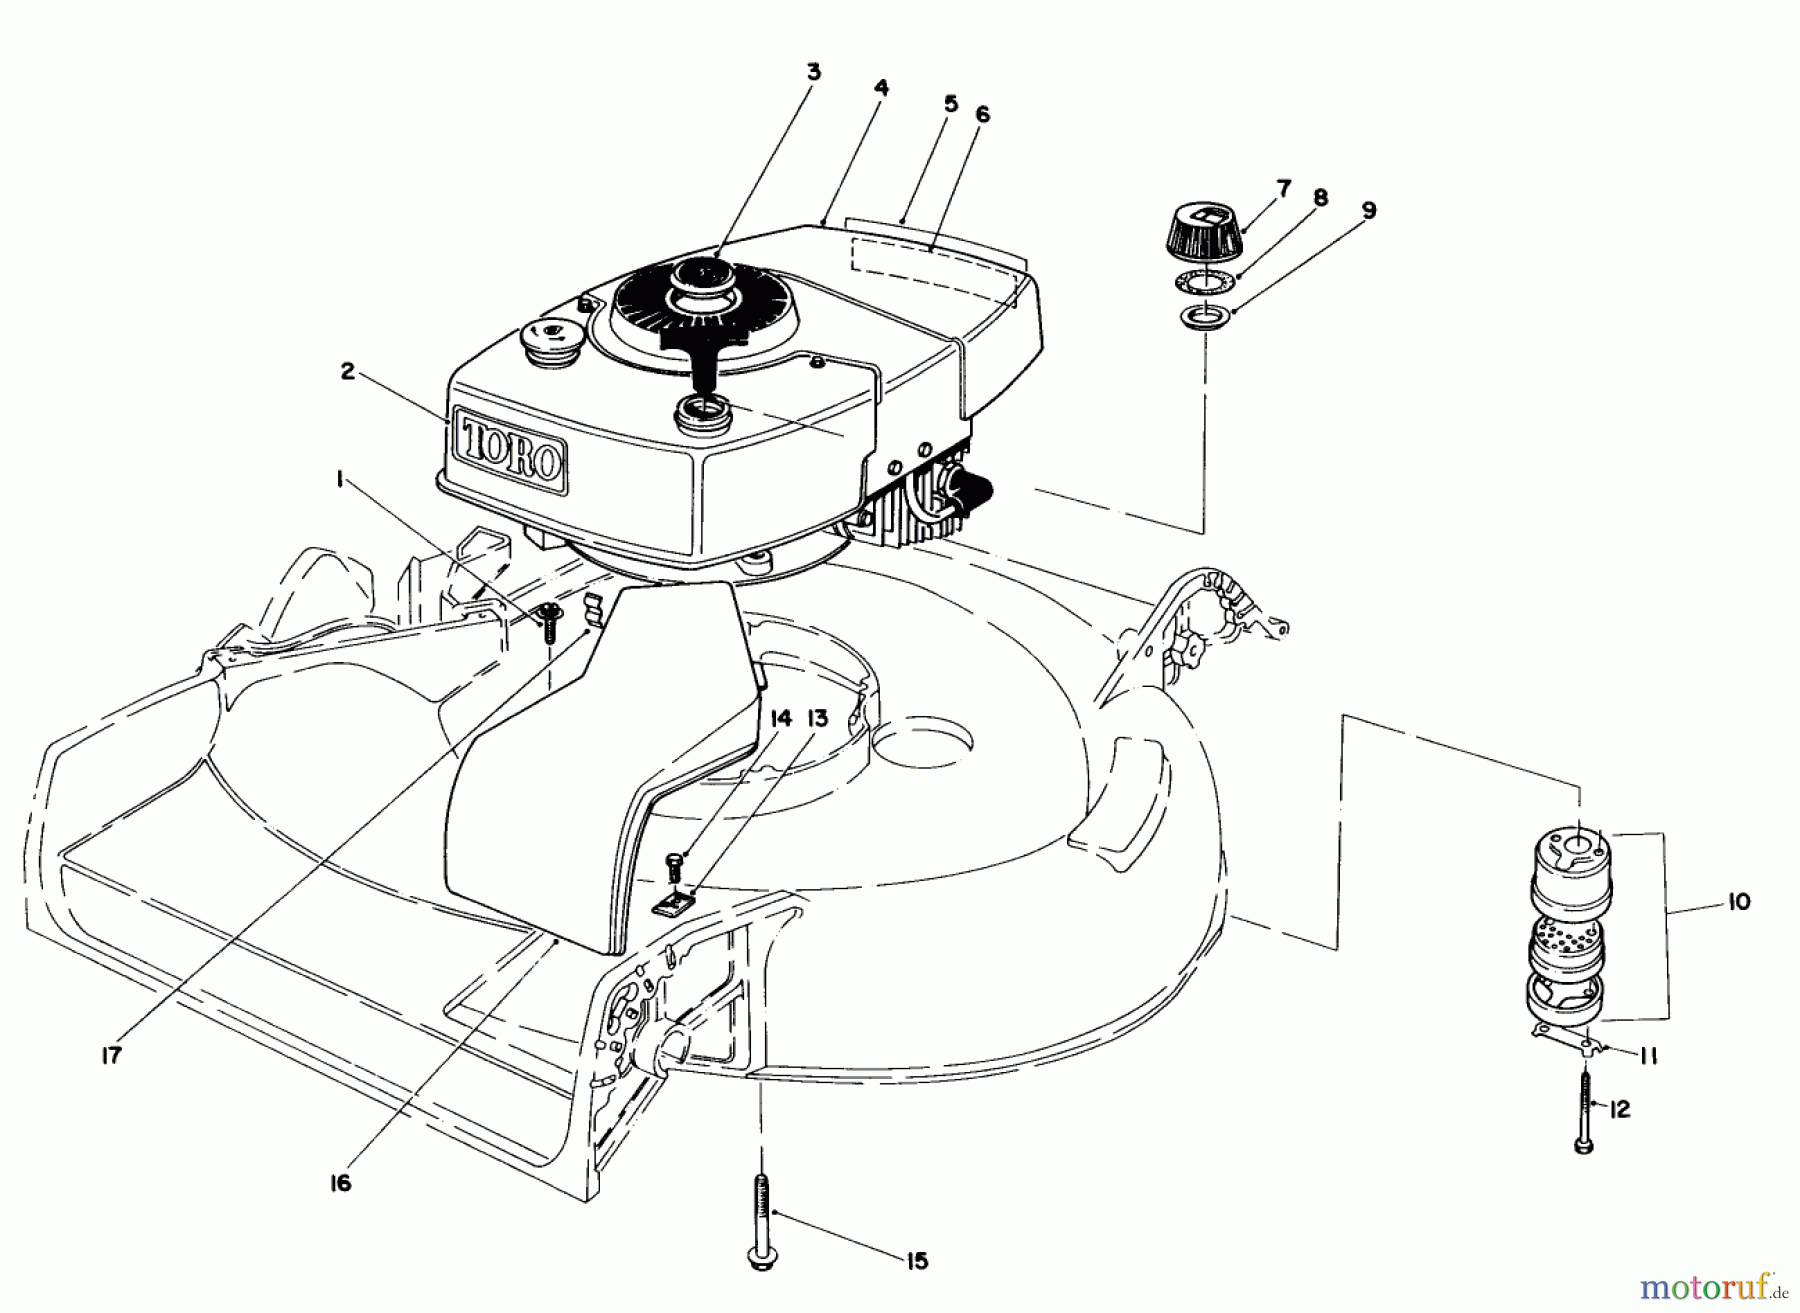  Toro Neu Mowers, Walk-Behind Seite 1 16297C - Toro Lawnmower, 1985 (5000001-5999999) ENGINE ASSEMBLY